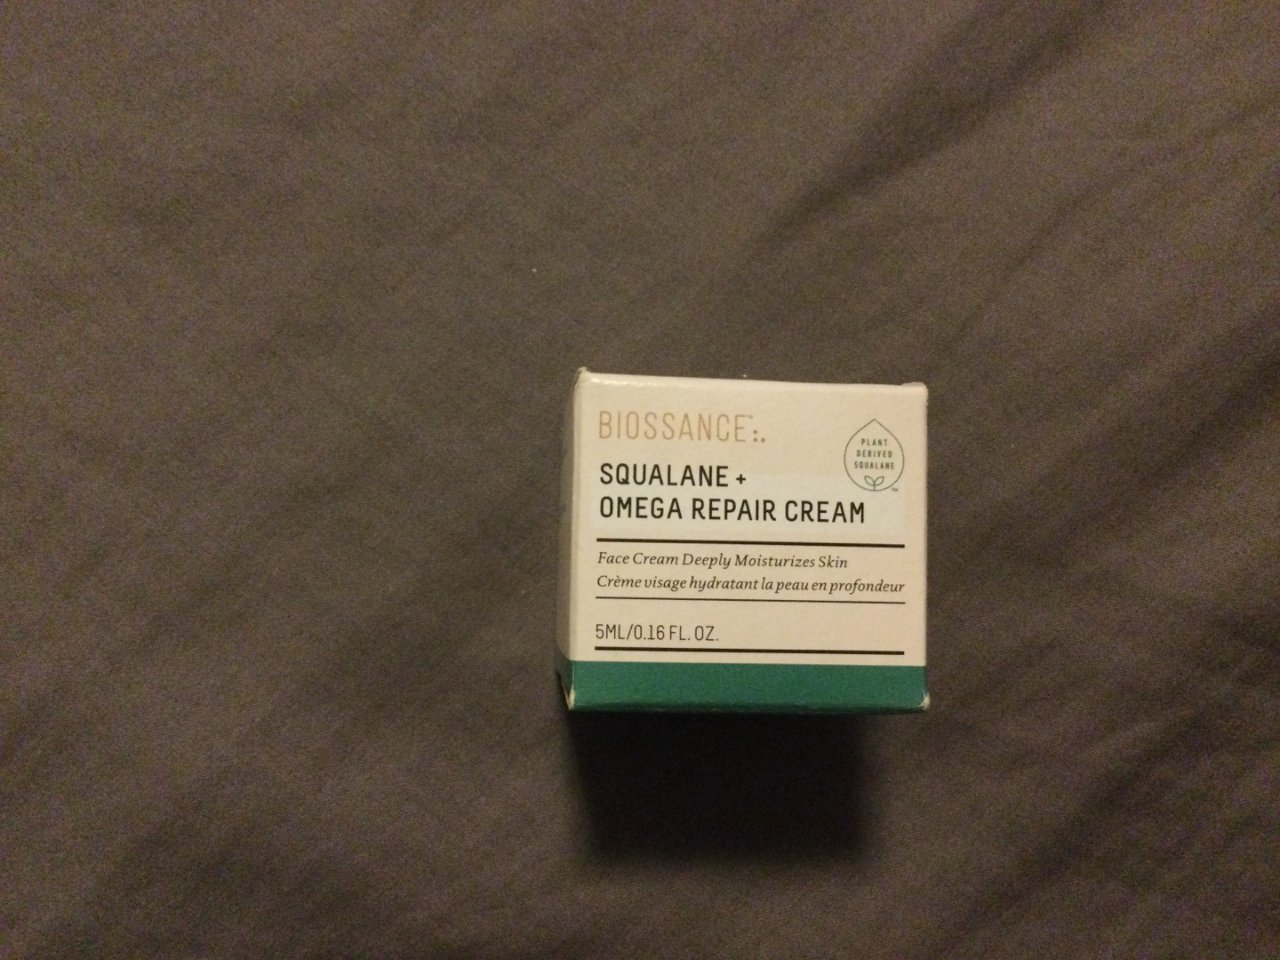 Squalane + Omega Repair Cream | Biossance